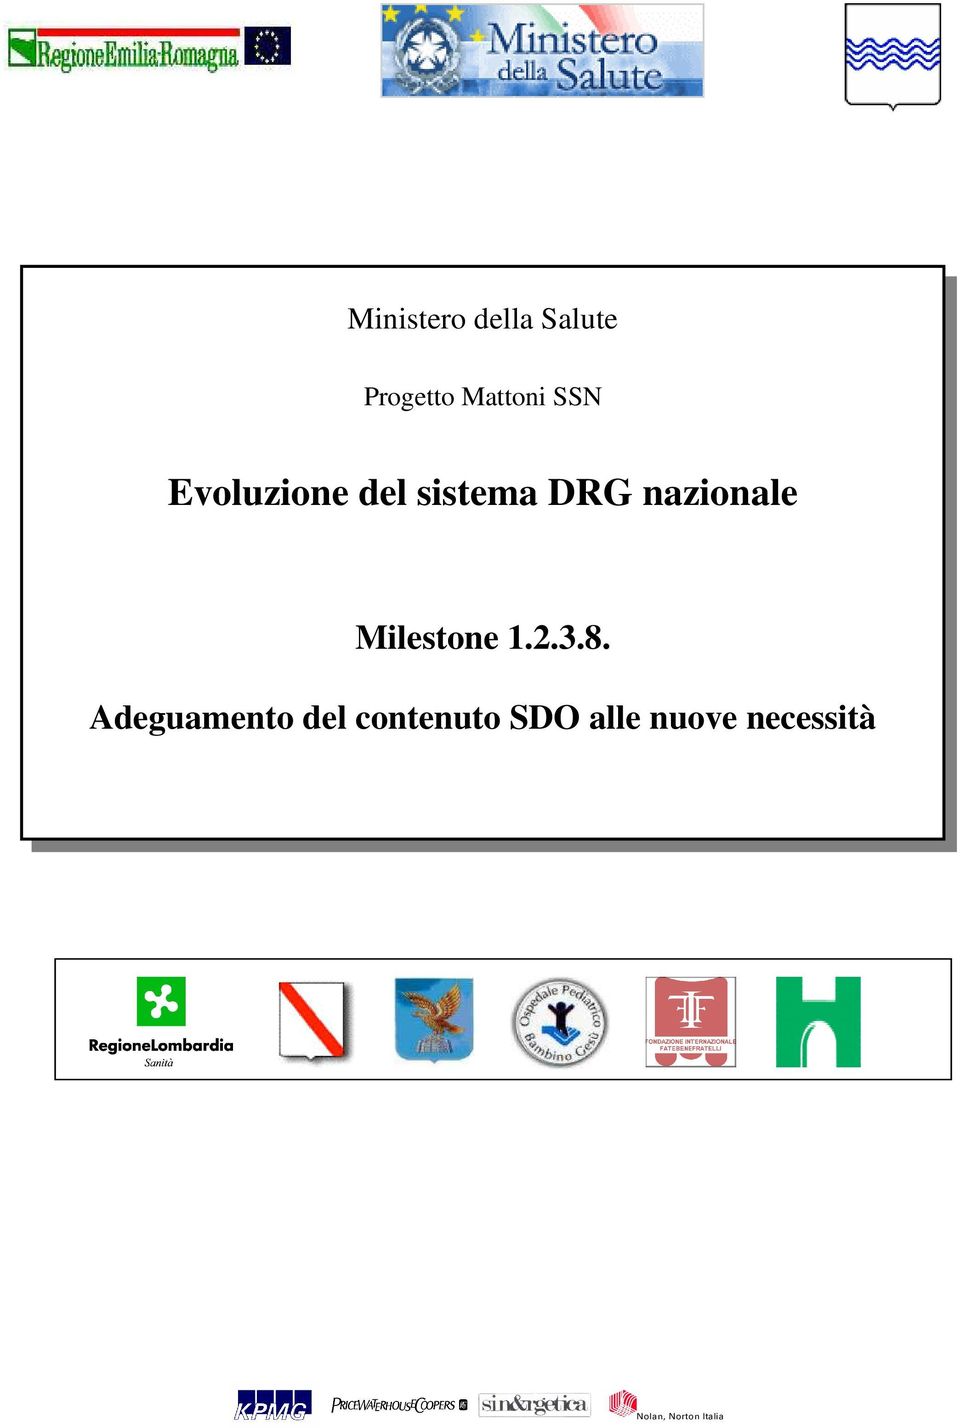 DRG nazionale Milestone 1.2.3.8.